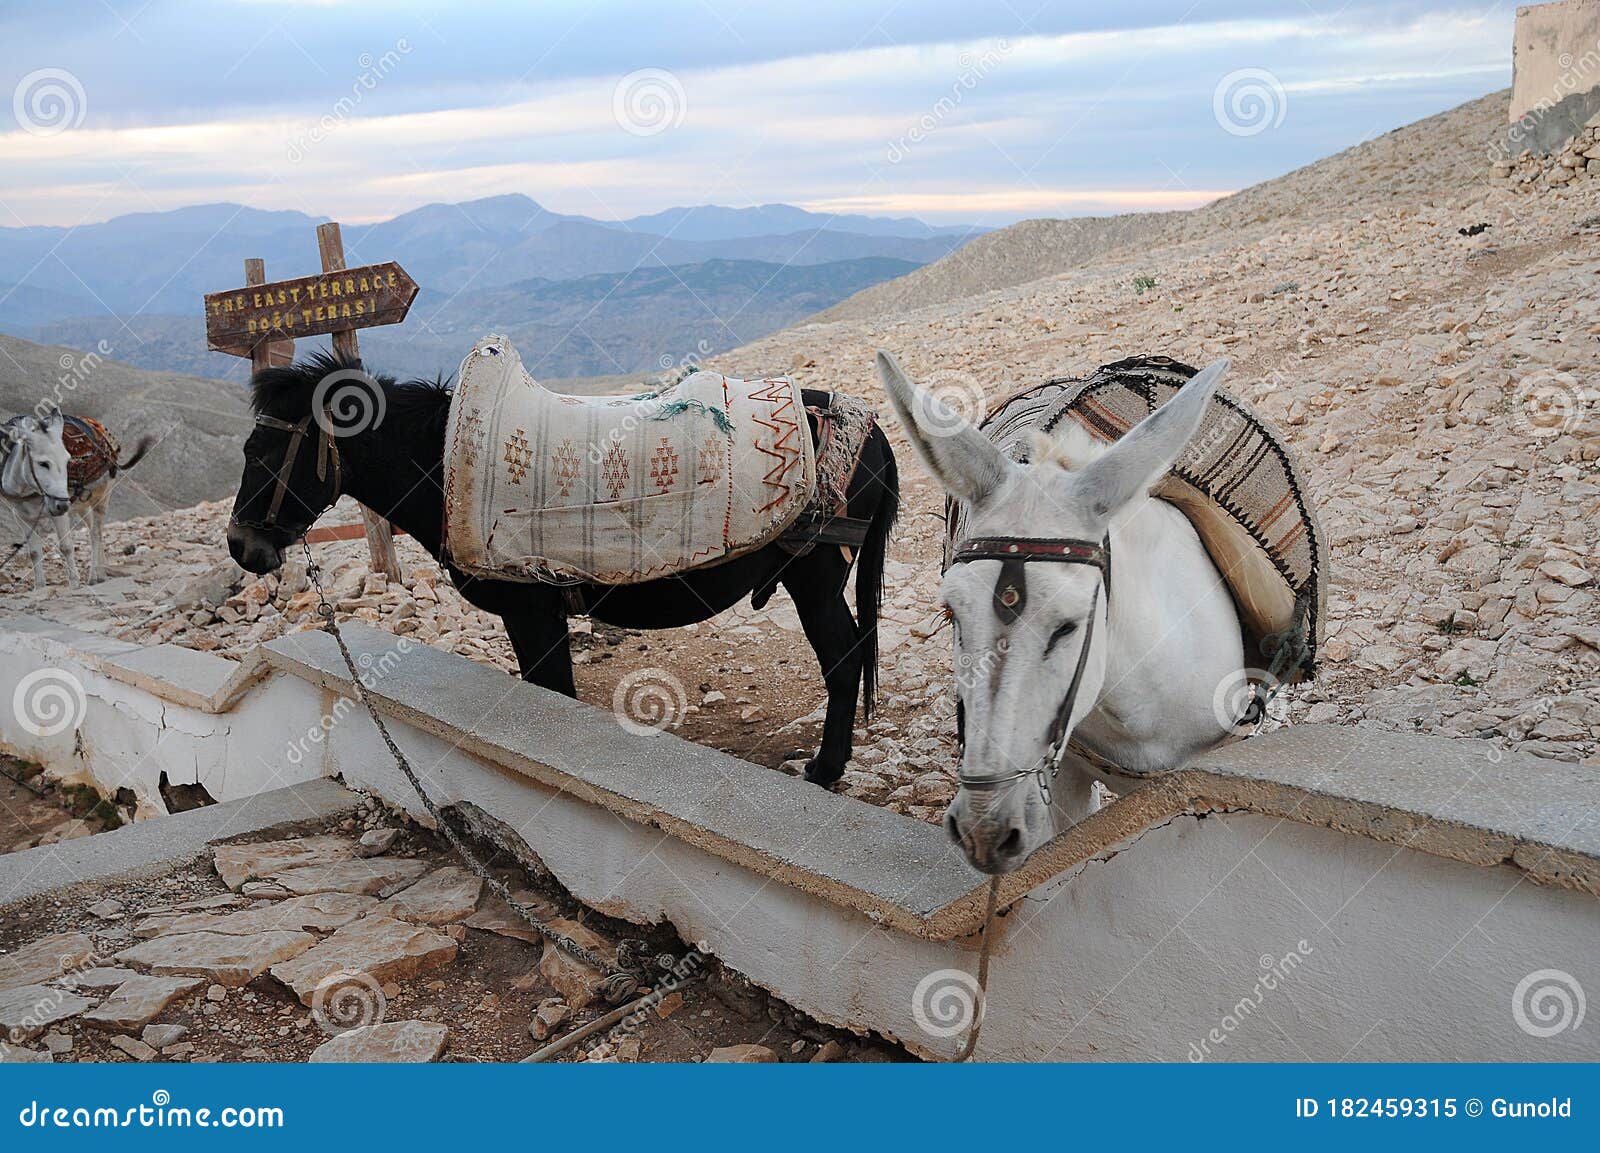 saddled  horde and donkey waiting for tourists